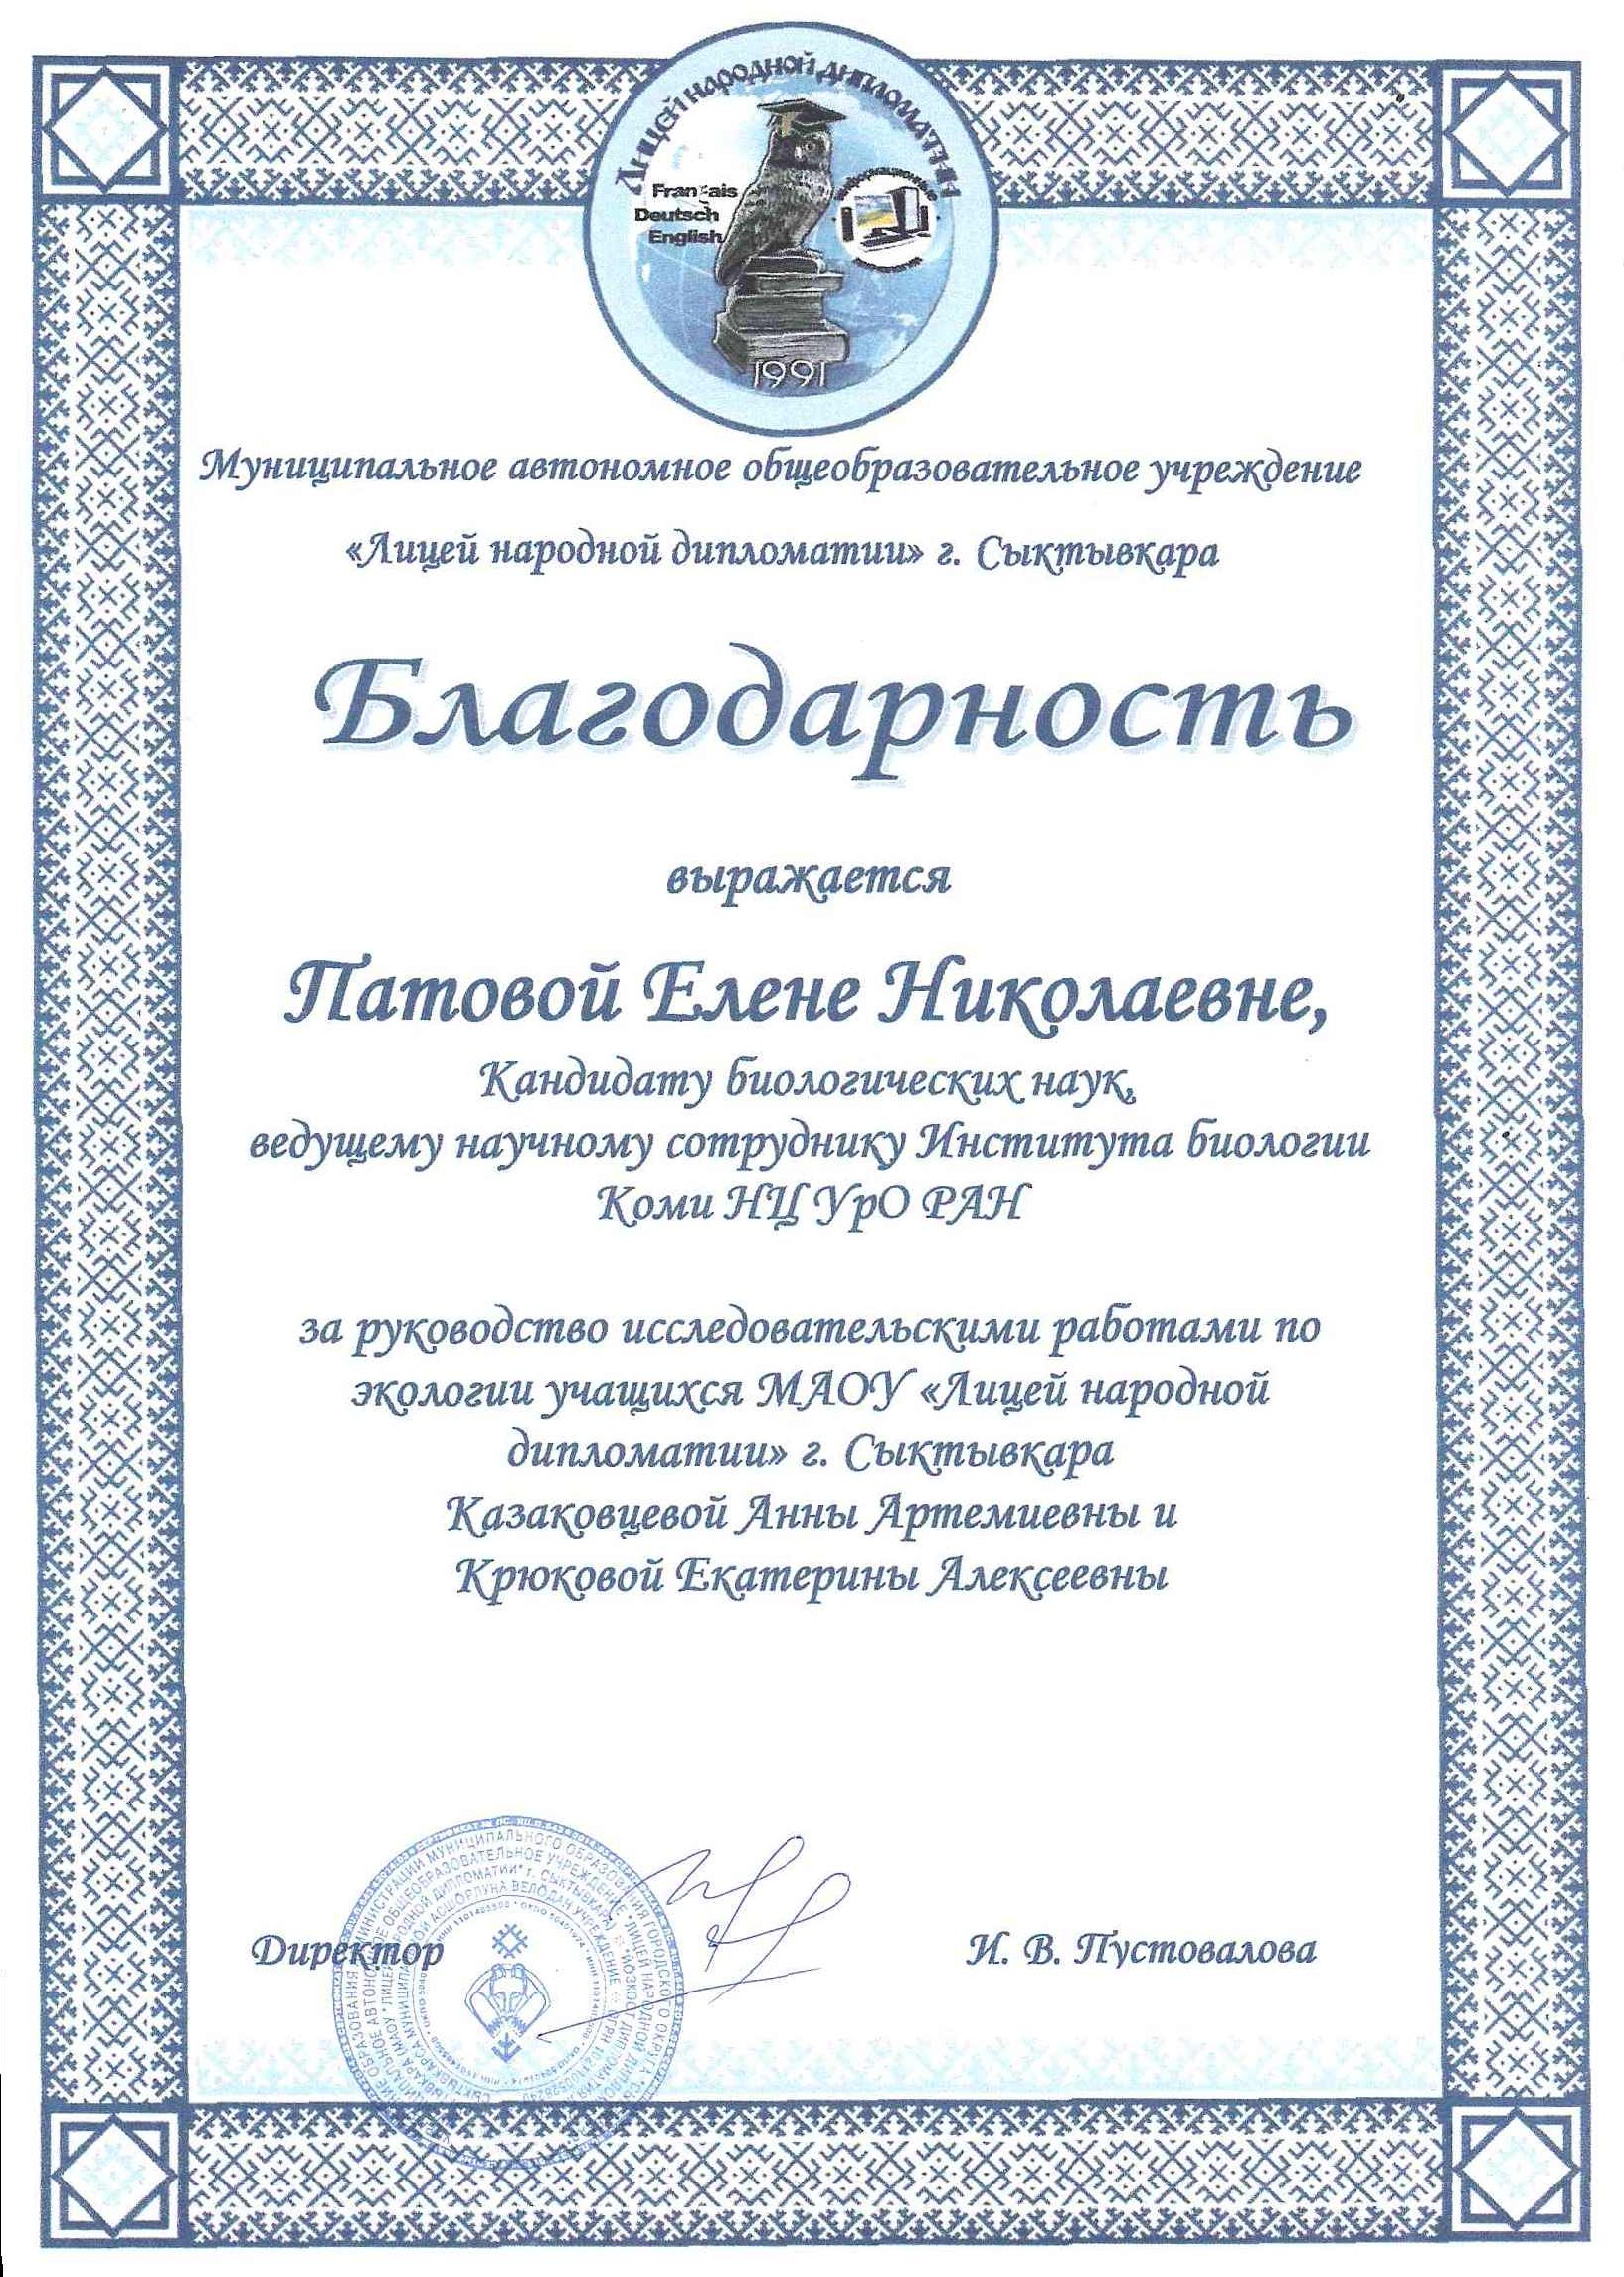 Благодарность Елене Николаевне Патовой от Лицея народной дипломатии г. Сыктывкара